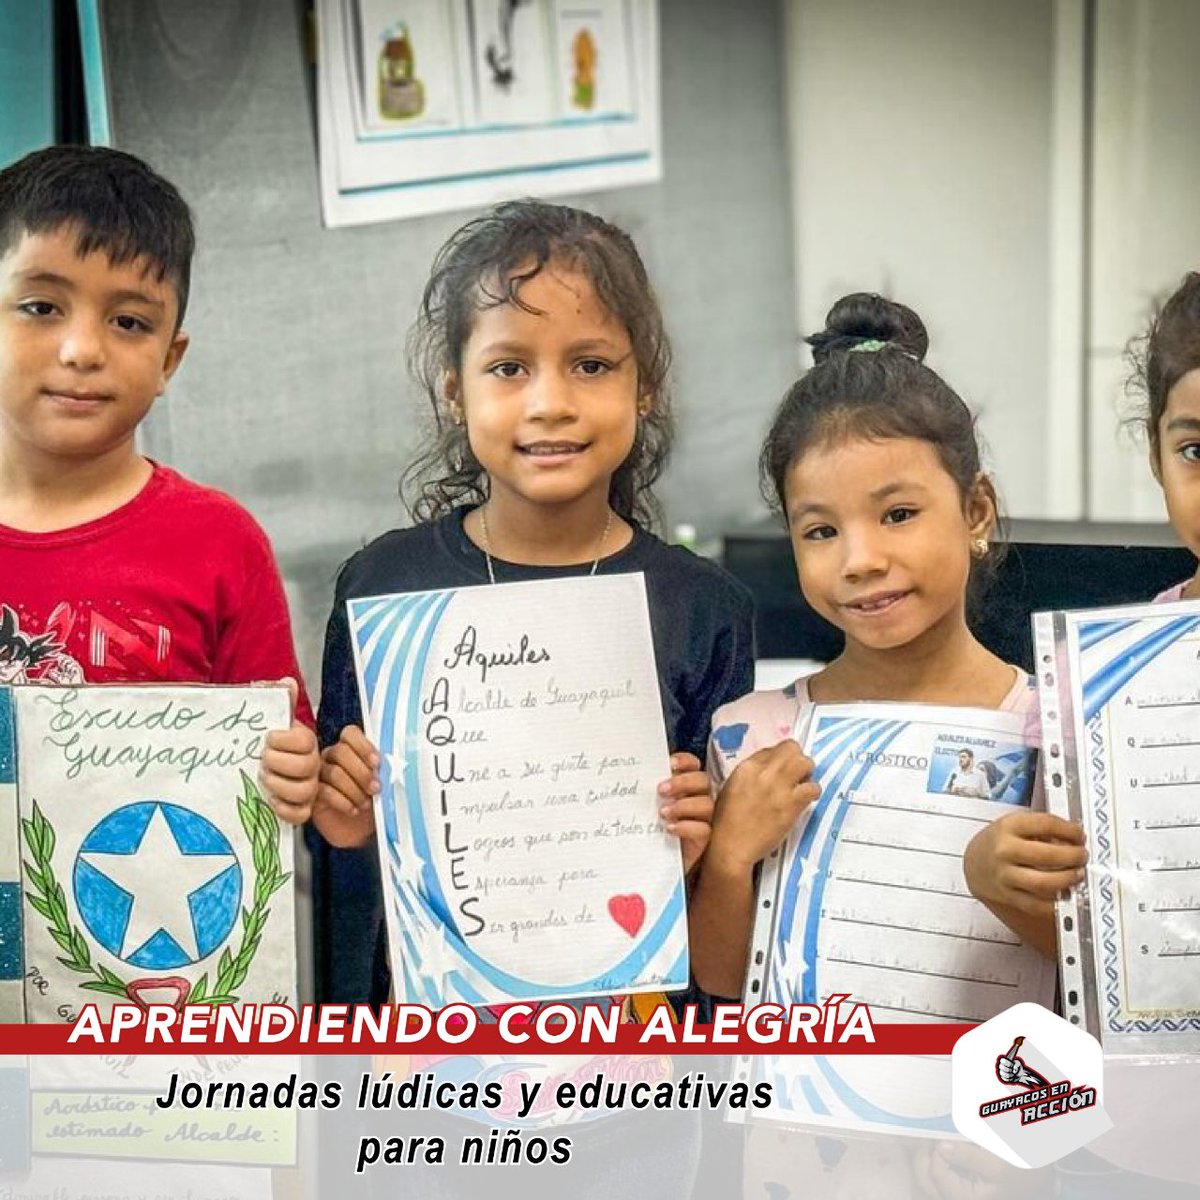 En Guayaquil, promovemos la Nivelación Académica con jornadas divertidas. Los pequeños desarrollan habilidades sociales y amor por el aprendizaje. Únete a la comunidad educativa y disfruta aprendiendo. #GuayaquilEduca #NiñosFelices 🌟📚